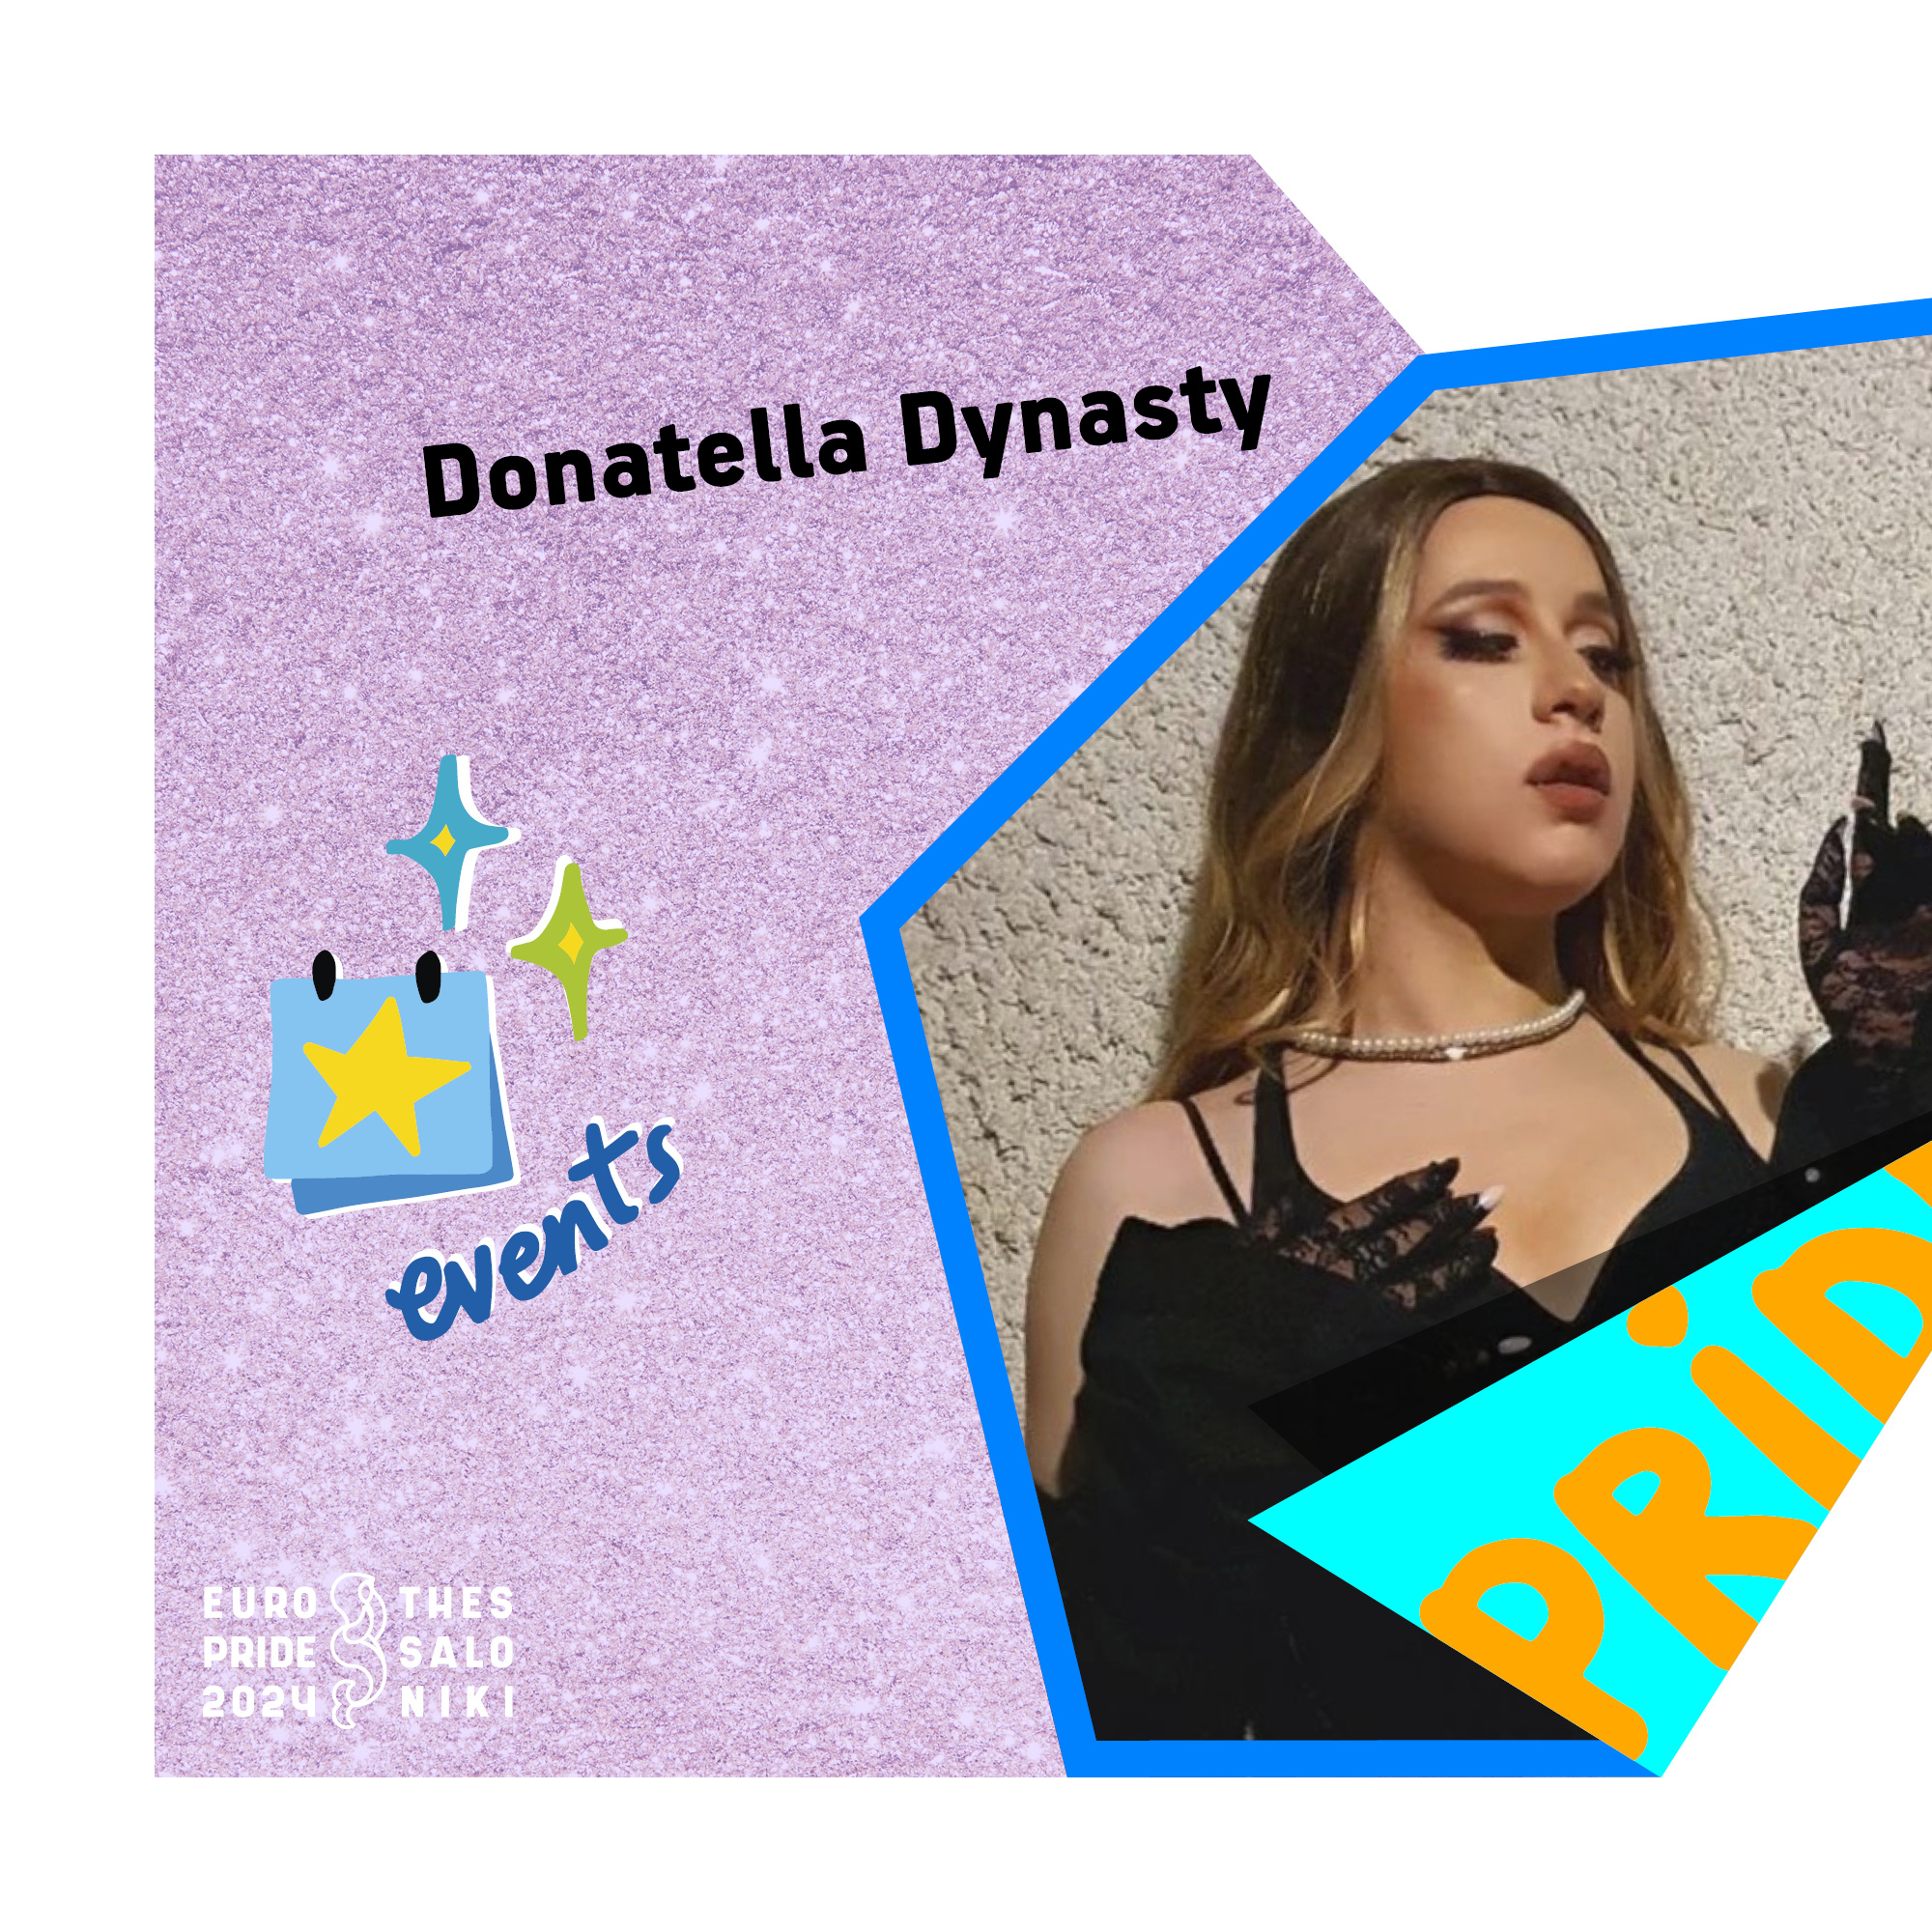 donatella dynasty